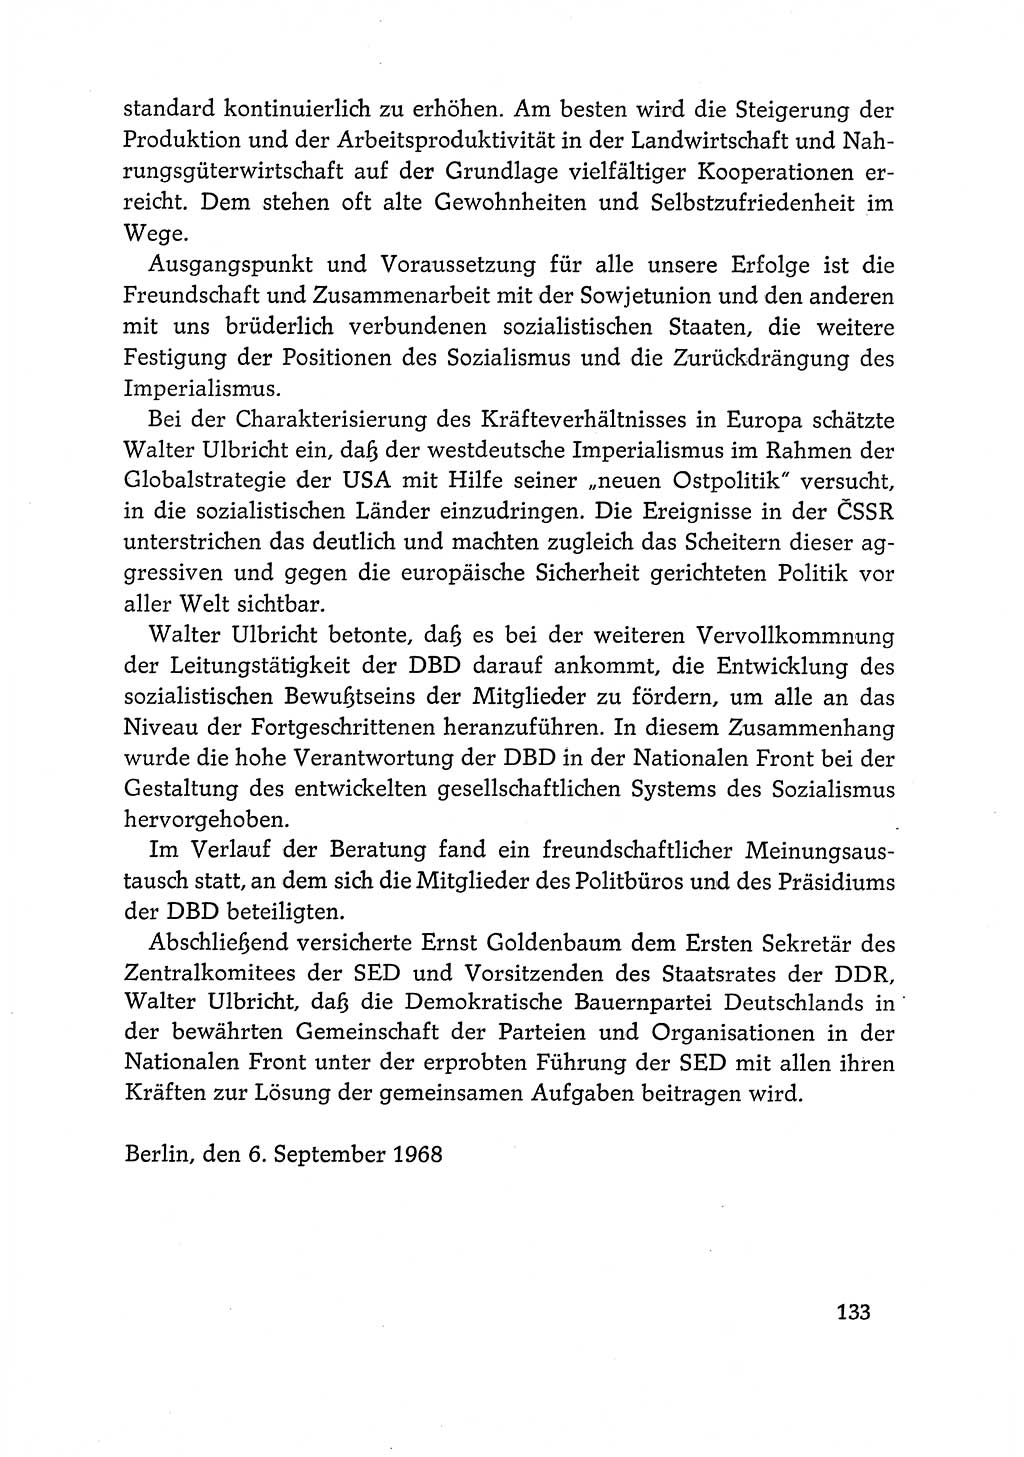 Dokumente der Sozialistischen Einheitspartei Deutschlands (SED) [Deutsche Demokratische Republik (DDR)] 1968-1969, Seite 133 (Dok. SED DDR 1968-1969, S. 133)